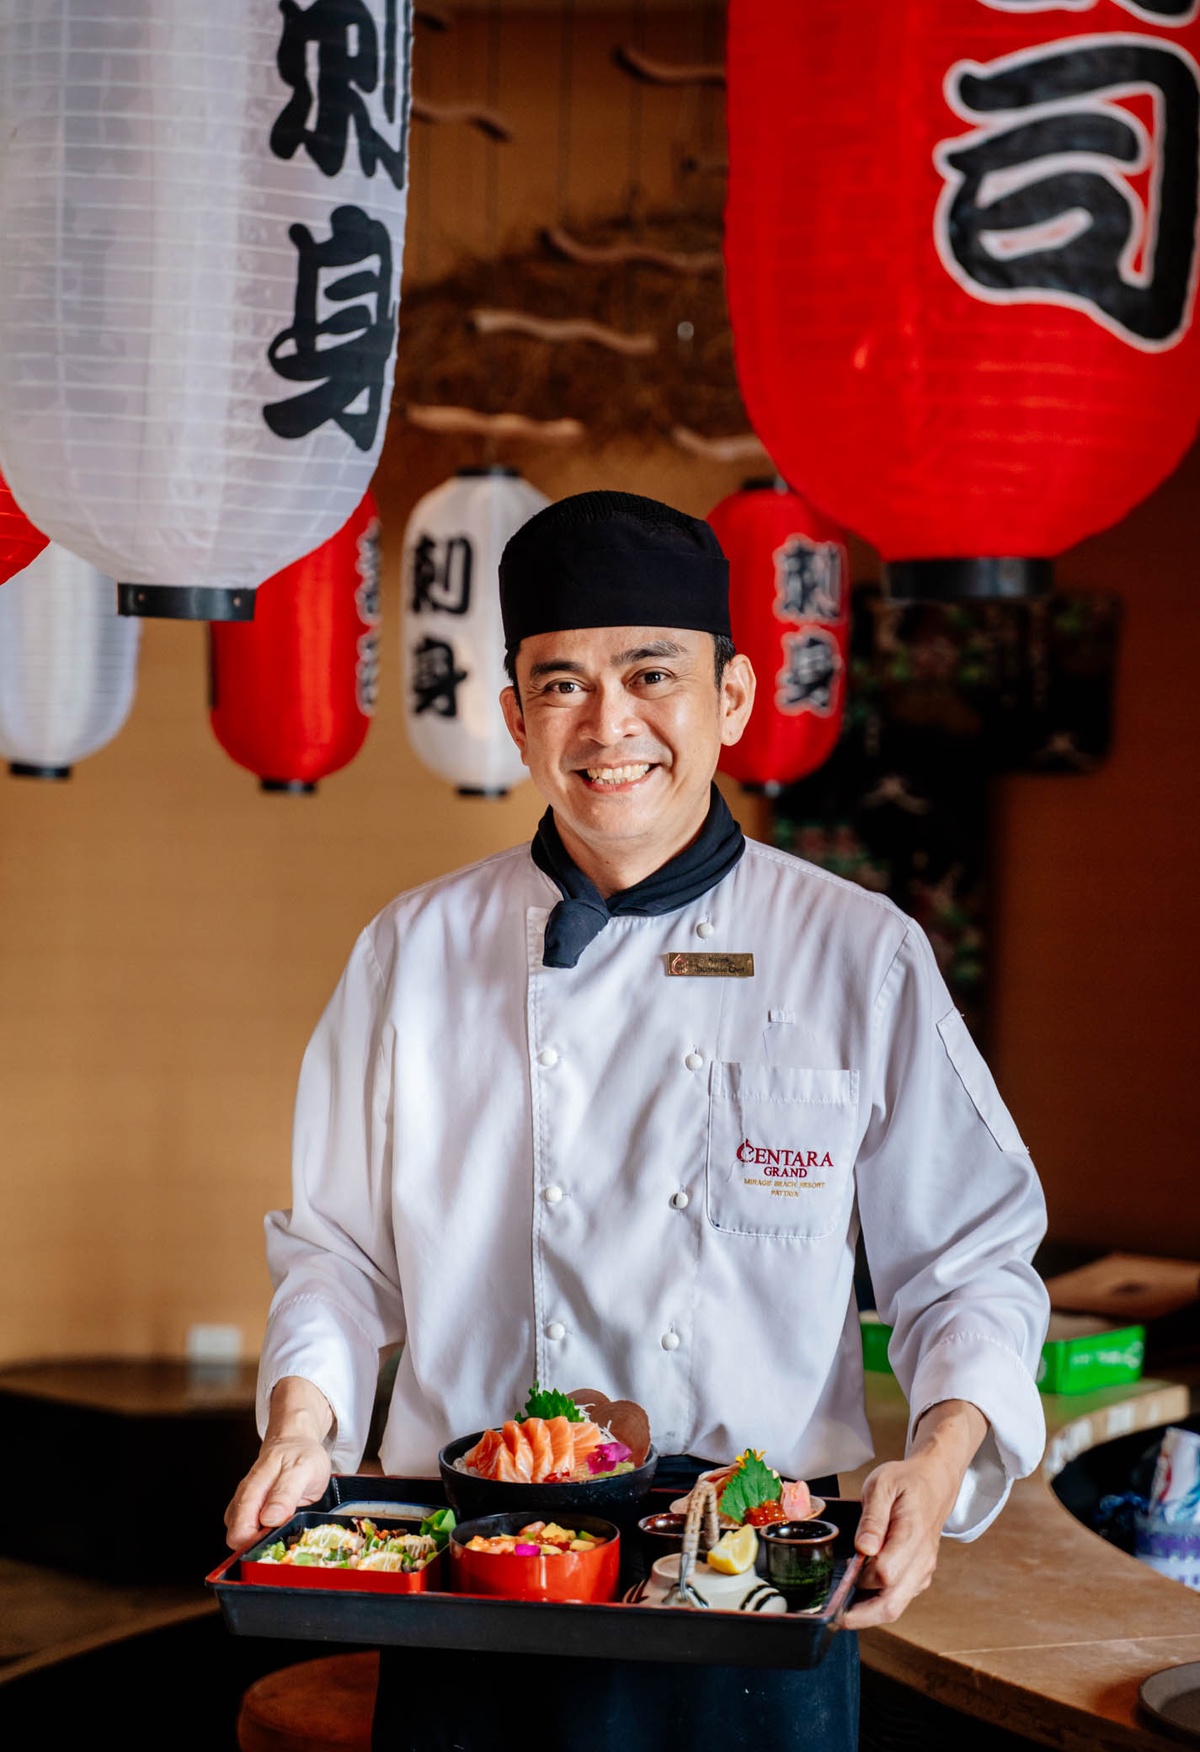 สัมผัสสุนทรียรสชาติอาหารญี่ปุ่น ขุมทรัพย์ความอร่อยแห่งท้องทะเลลึก ห้องอาหารฮากิ โรงแรมเซ็นทาราแกรนด์มิราจบีชรีสอร์ท พัทยา